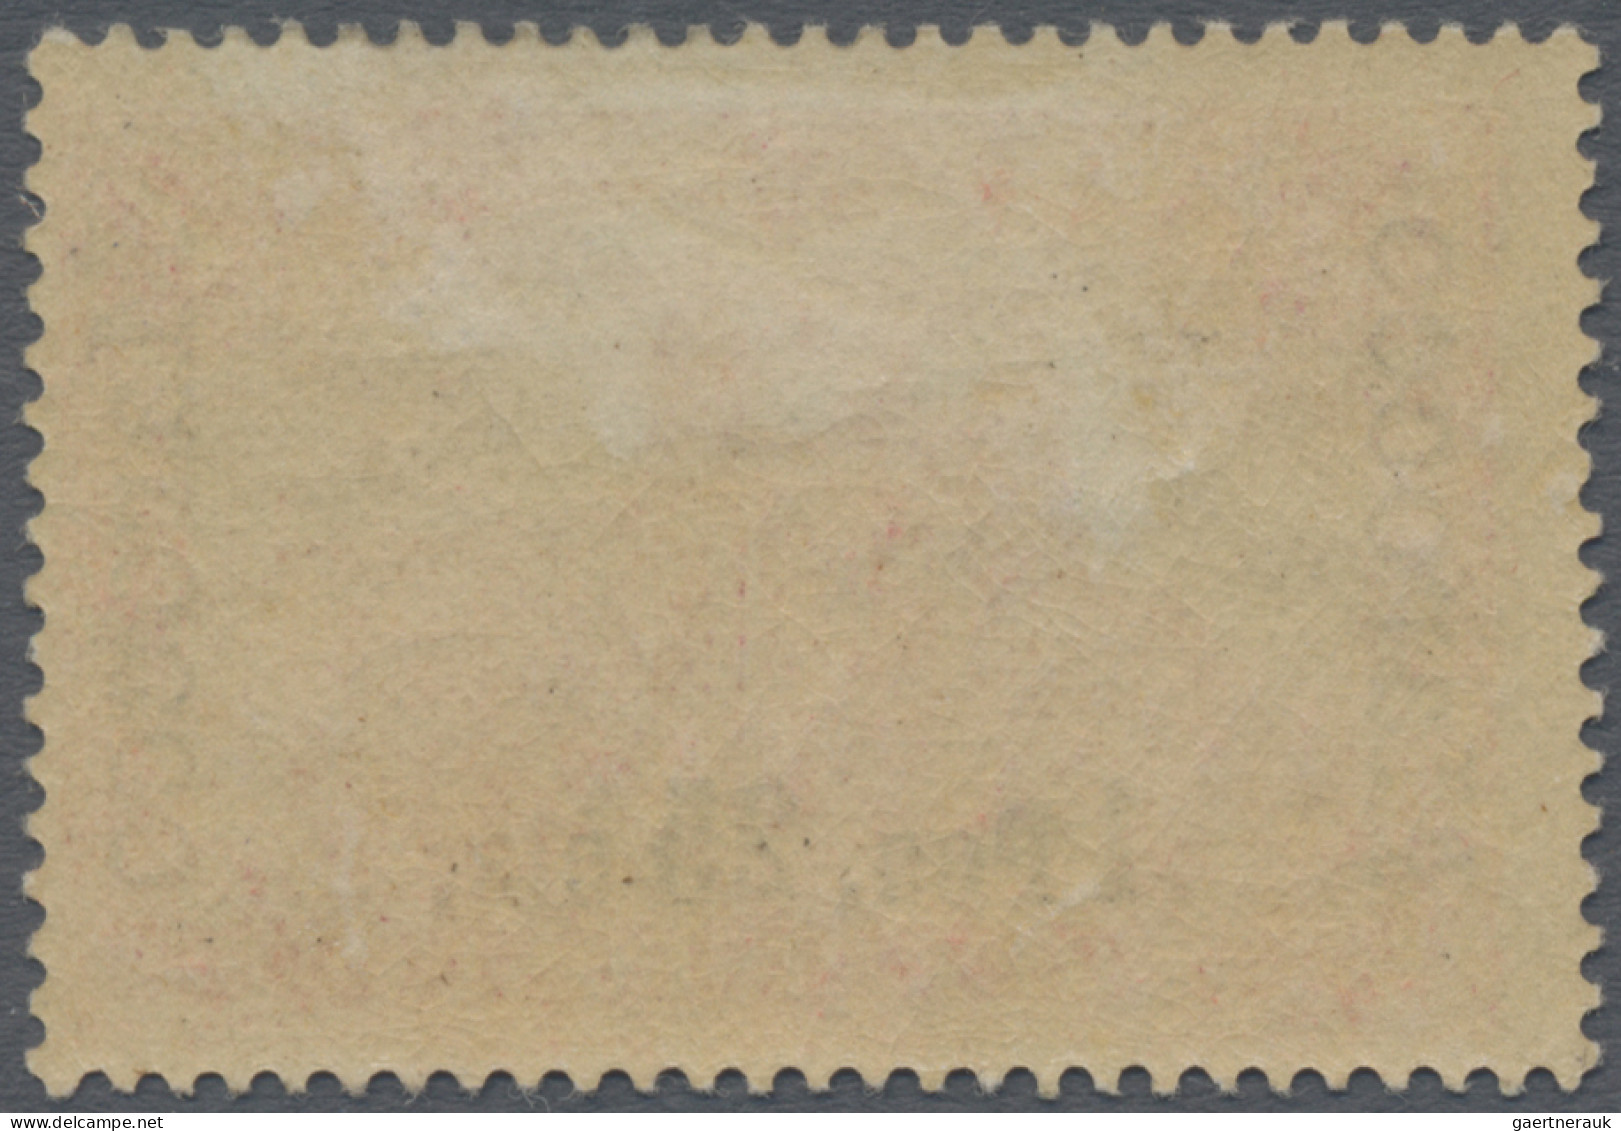 Deutsche Post In Marokko: 1900, Freimarke 1 P 25 C Auf 1 M Rot Mit Aufdrucktype - Morocco (offices)